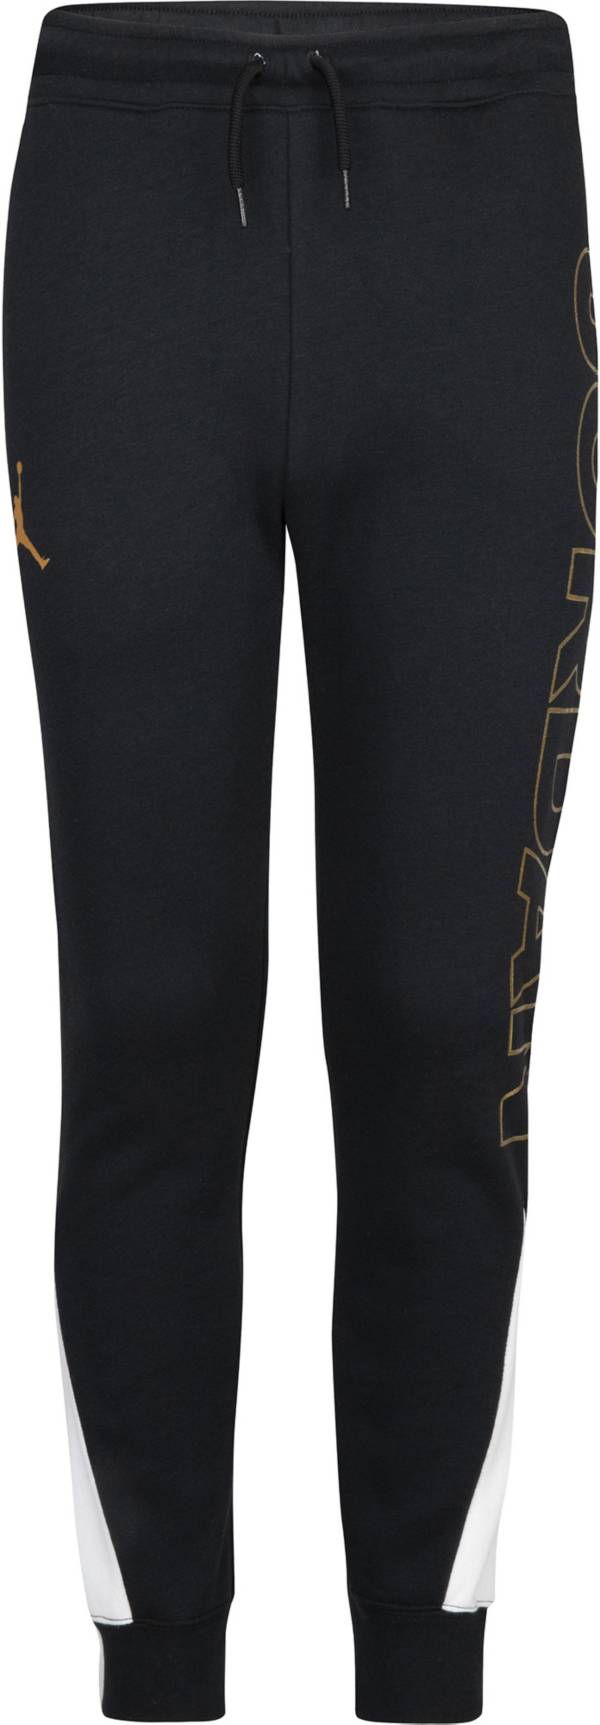 Jordan Girls' Holiday Shine Fleece Pants product image